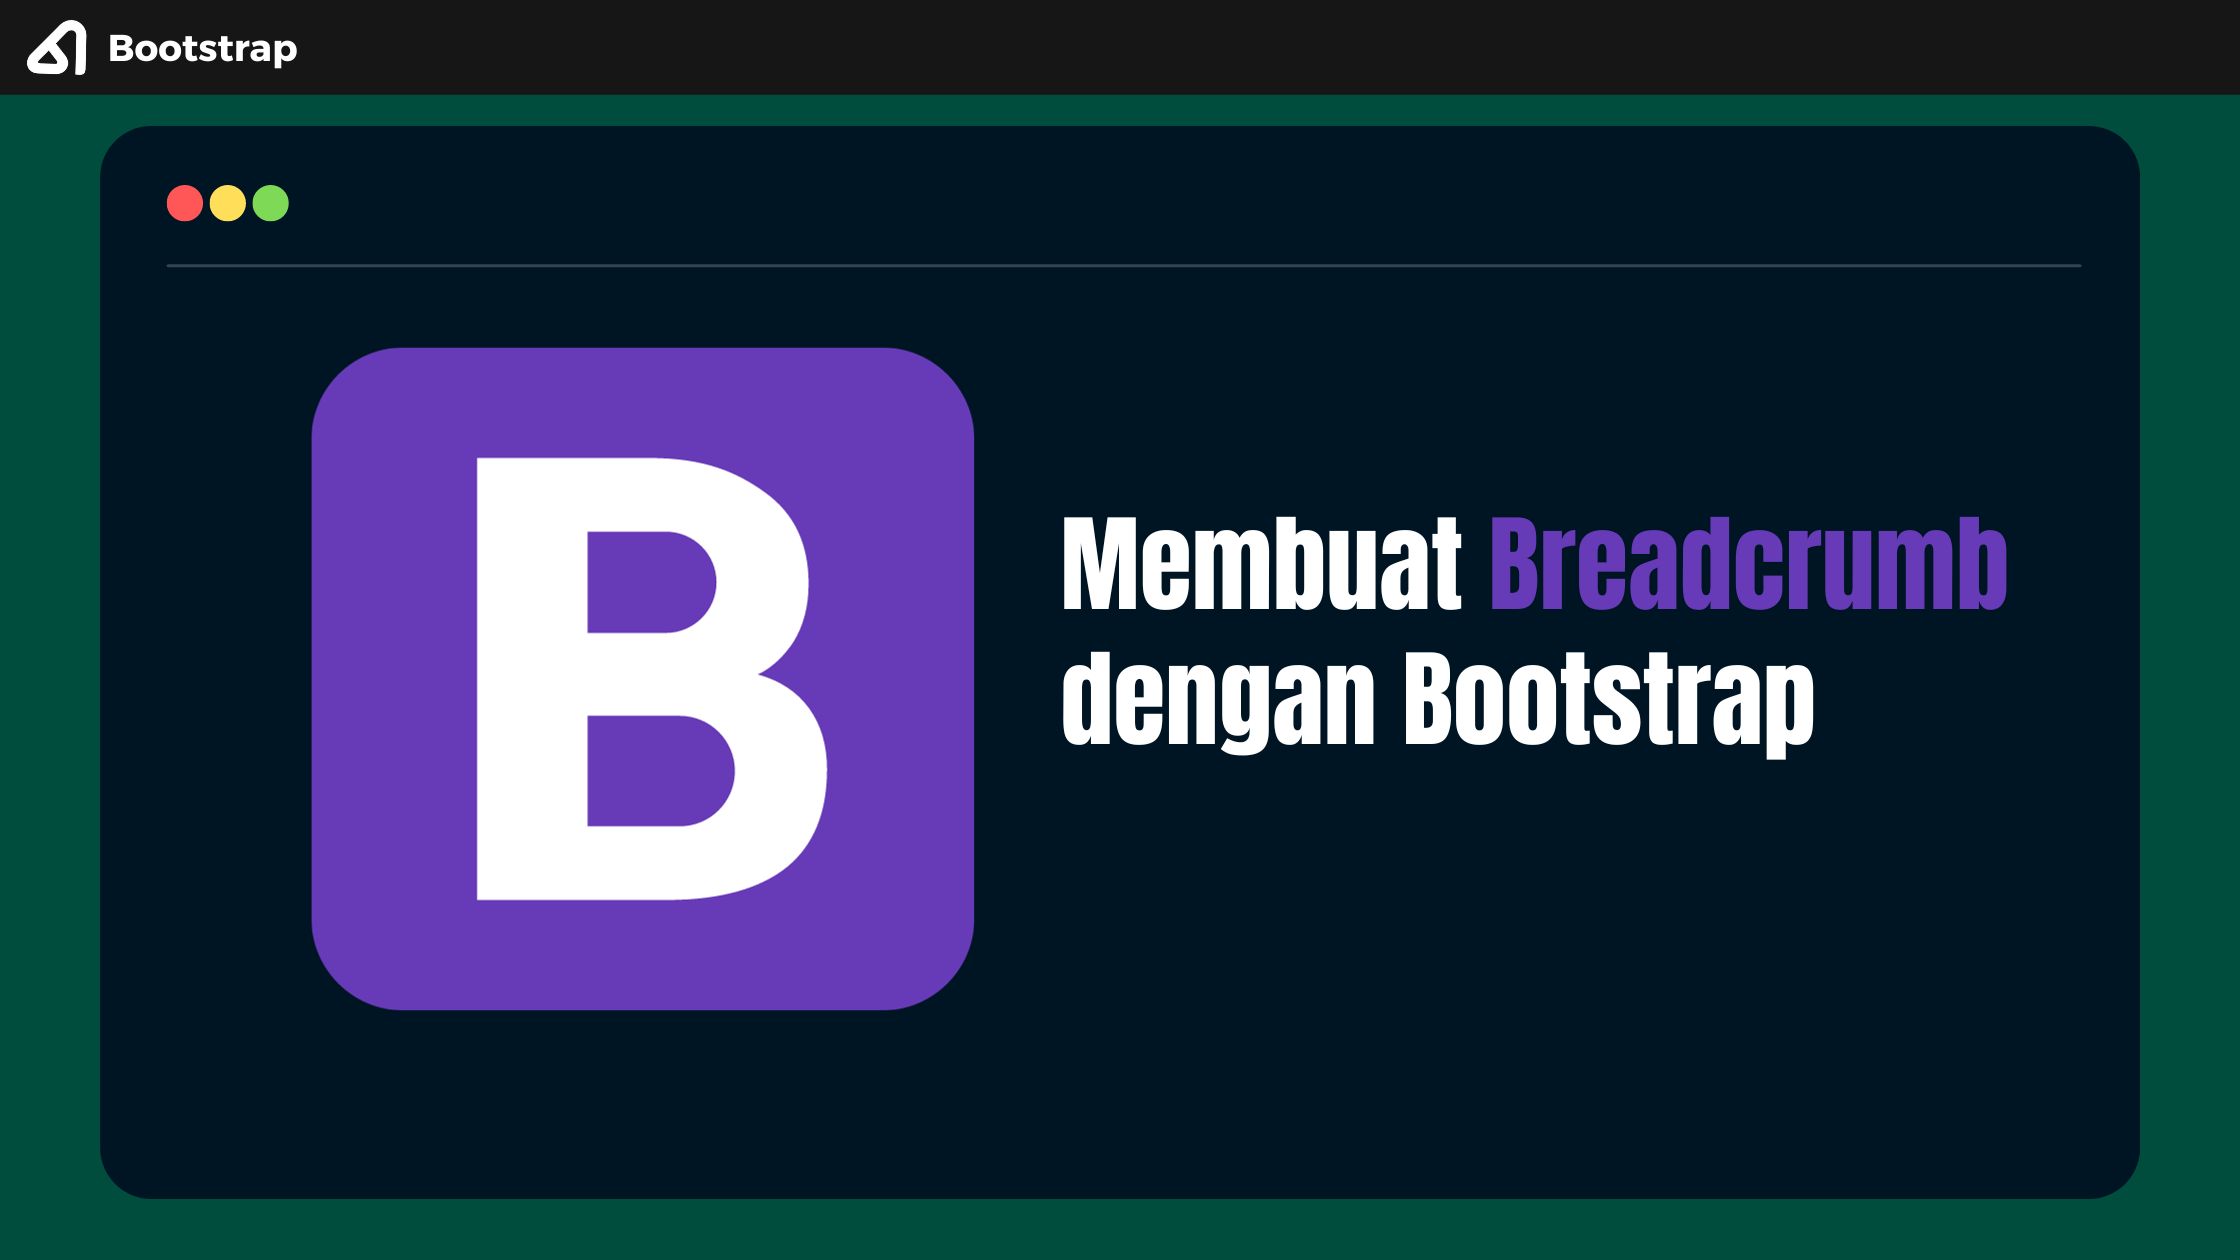 Membuat Breadcrumb dengan Bootstrap